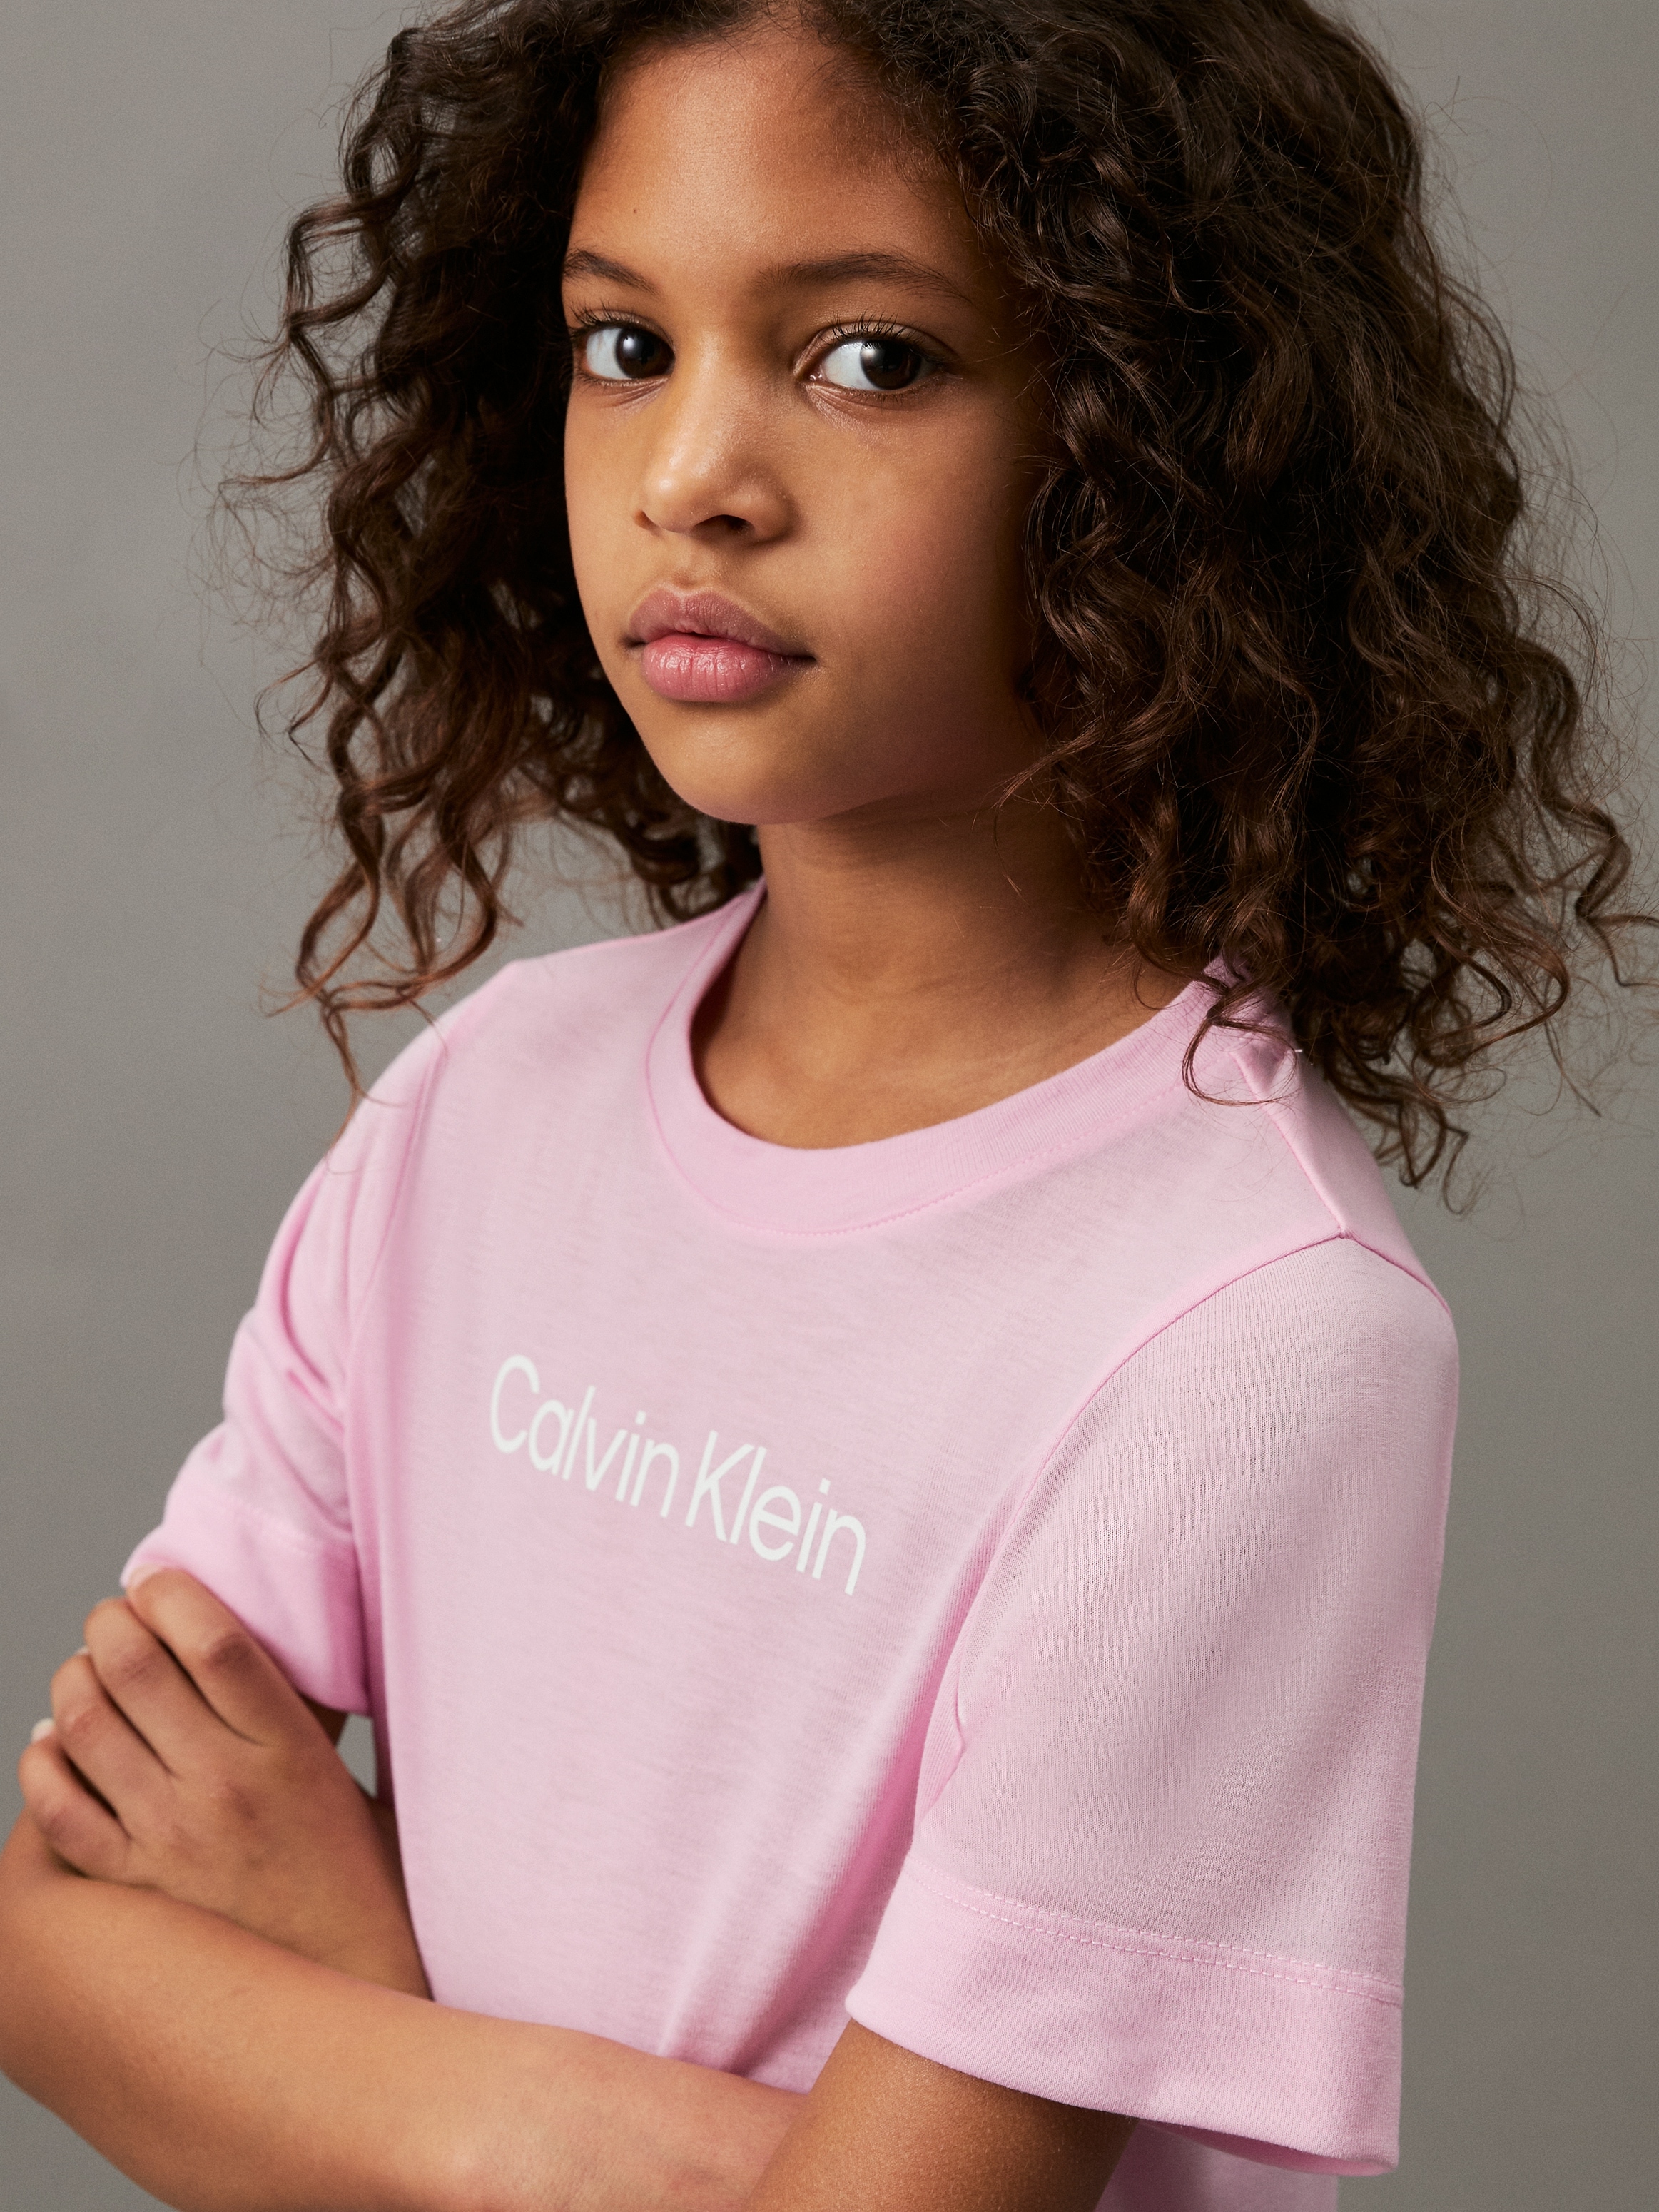 Calvin Klein Underwear Nachthemd »NIGHTDRESS«, Kinder bis 16 Jahren